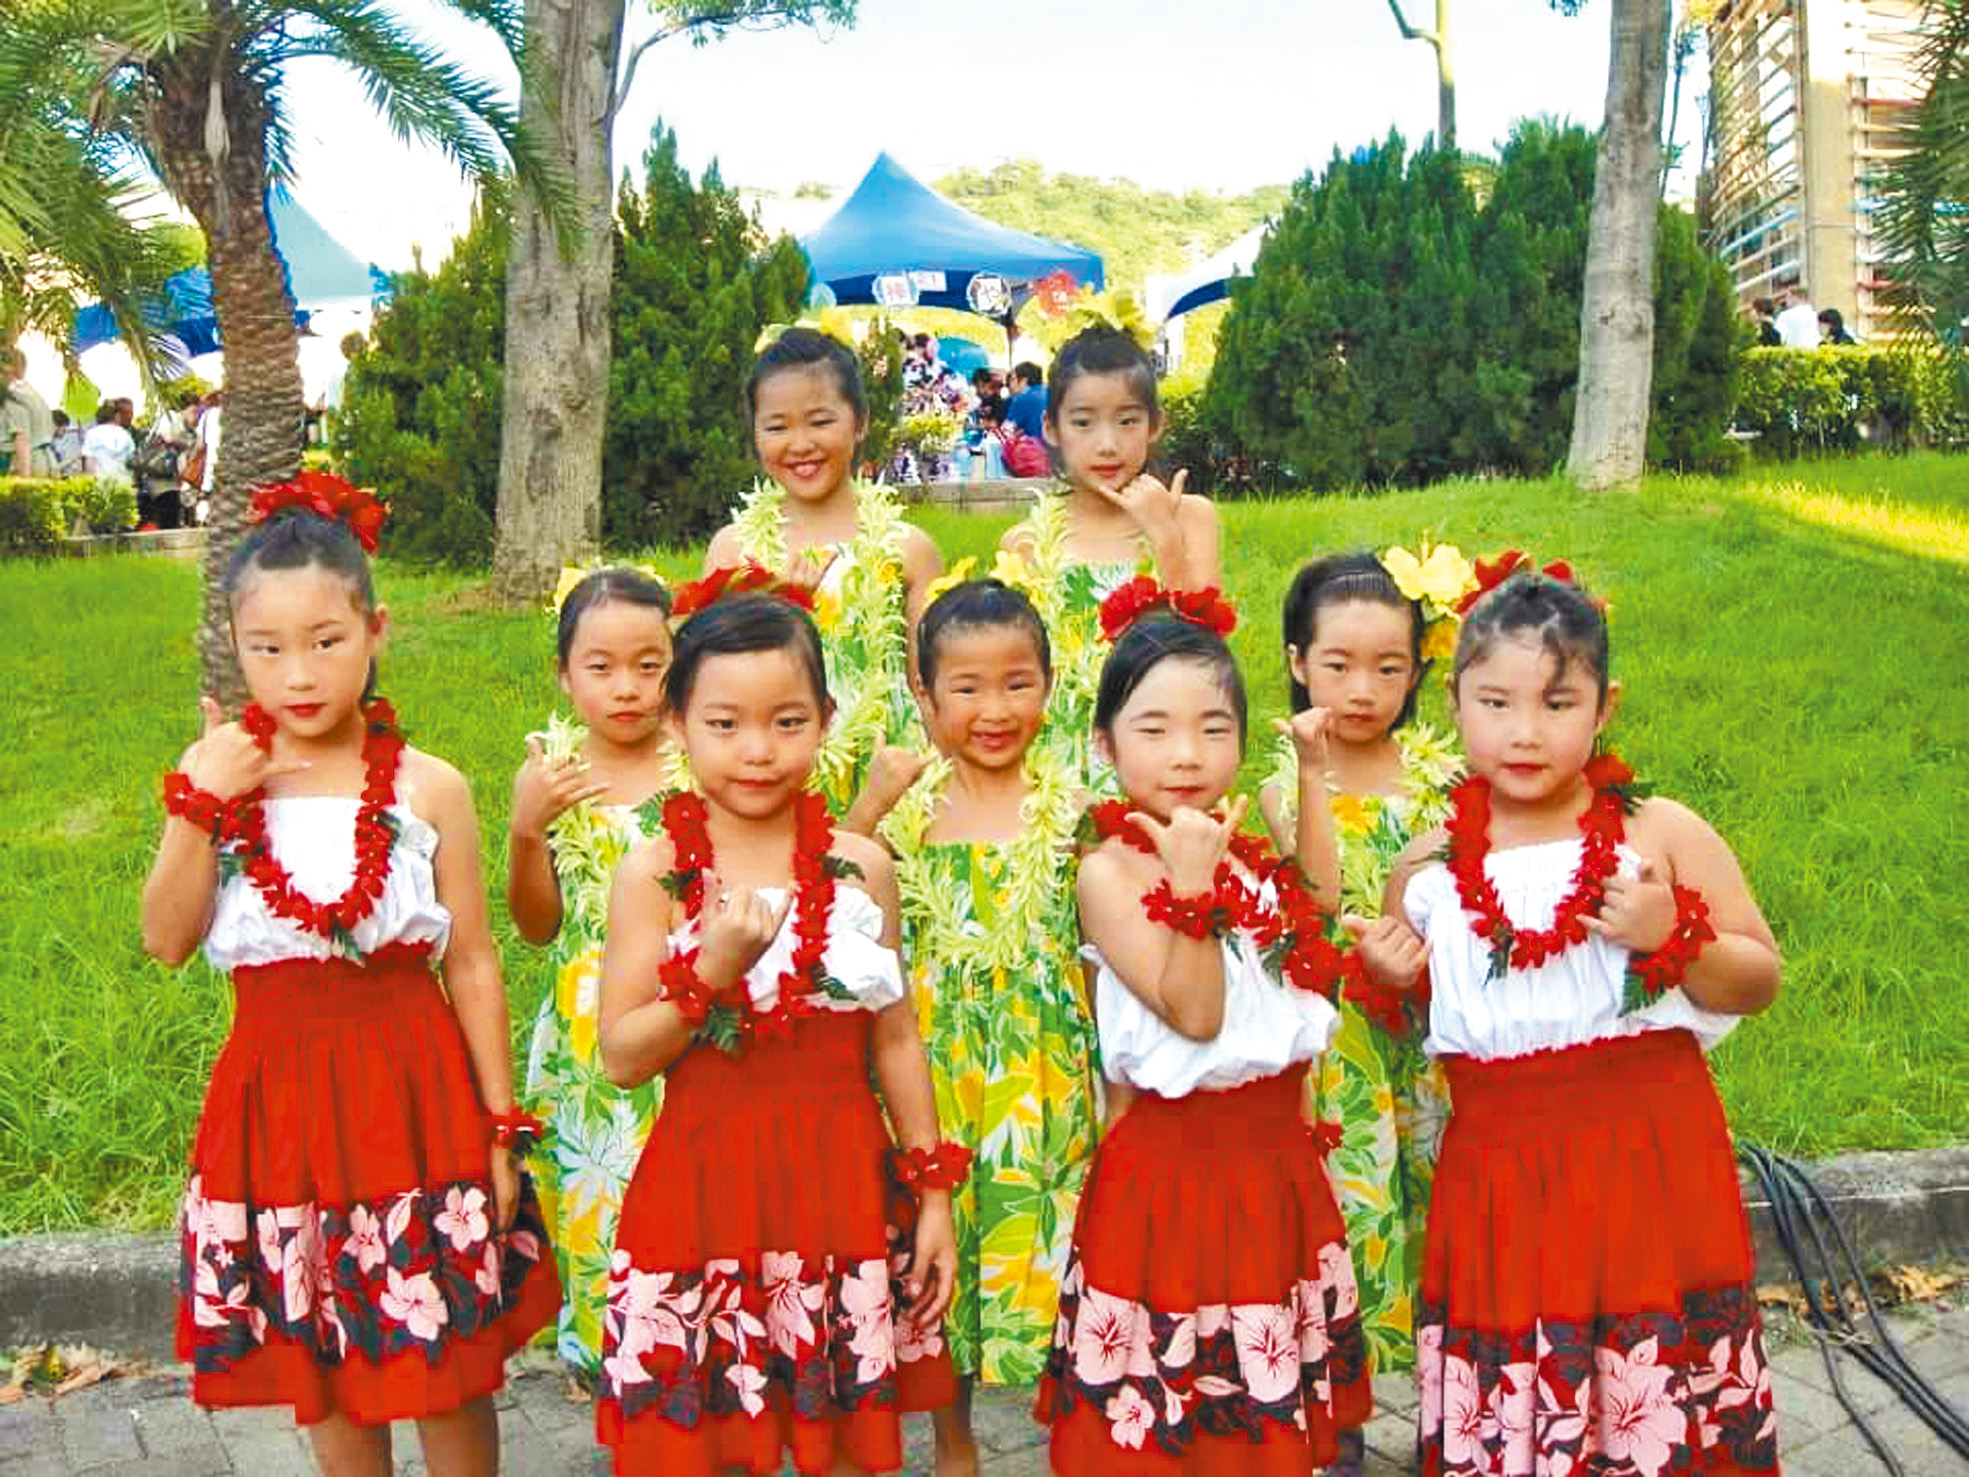 夏威夷舞3歲到100歲都適合學習。